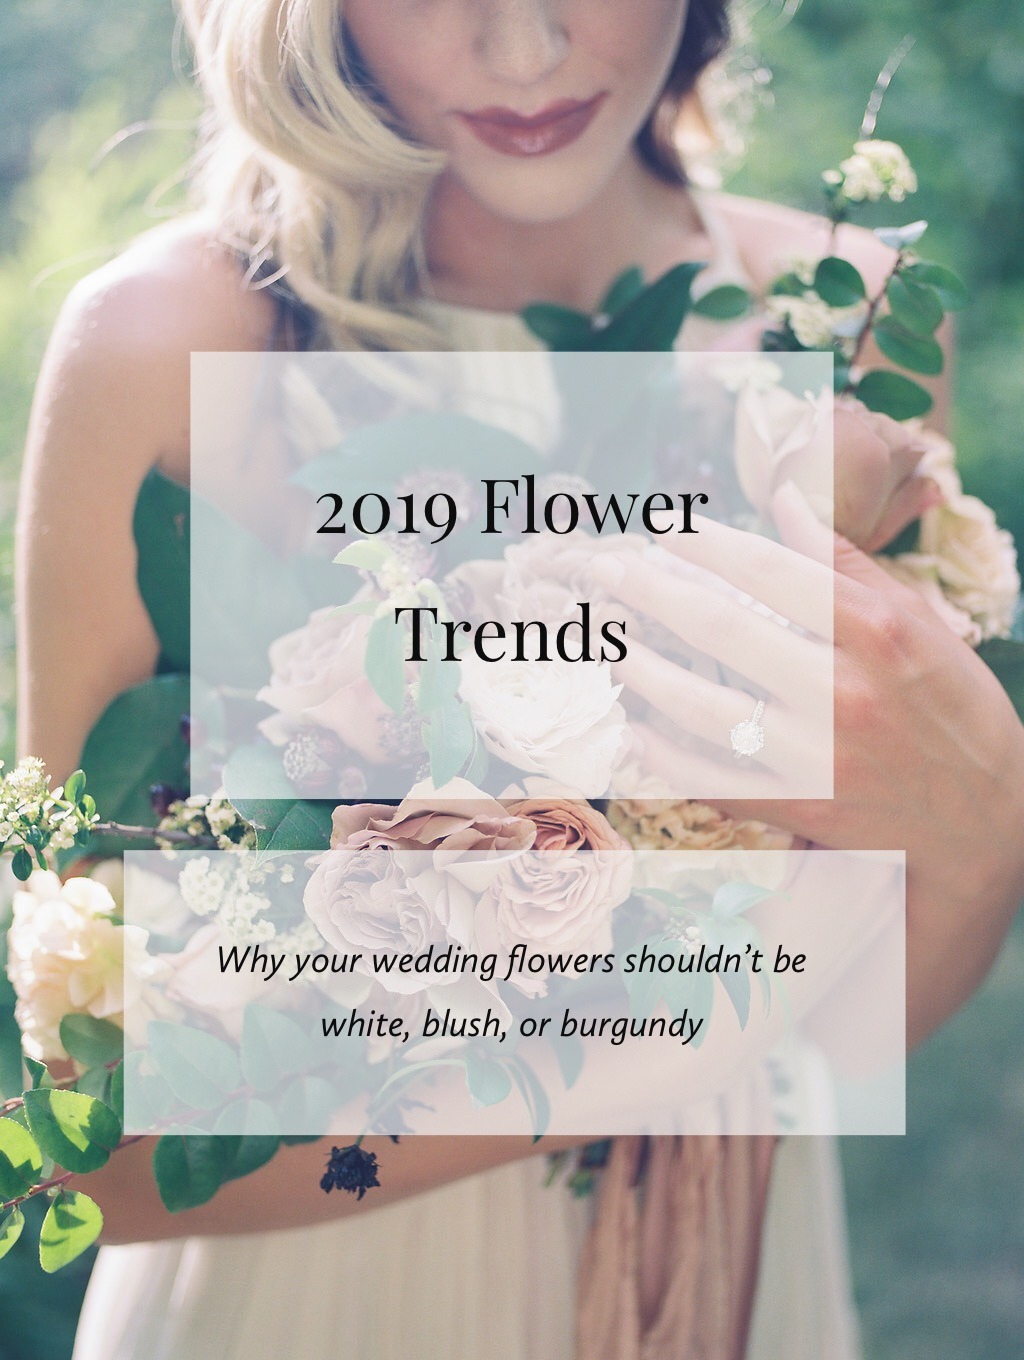 kentucky wedding florist, wedding florist, lexington wedding florist, louisville wedding florist, 2019 flower trends, flower trends